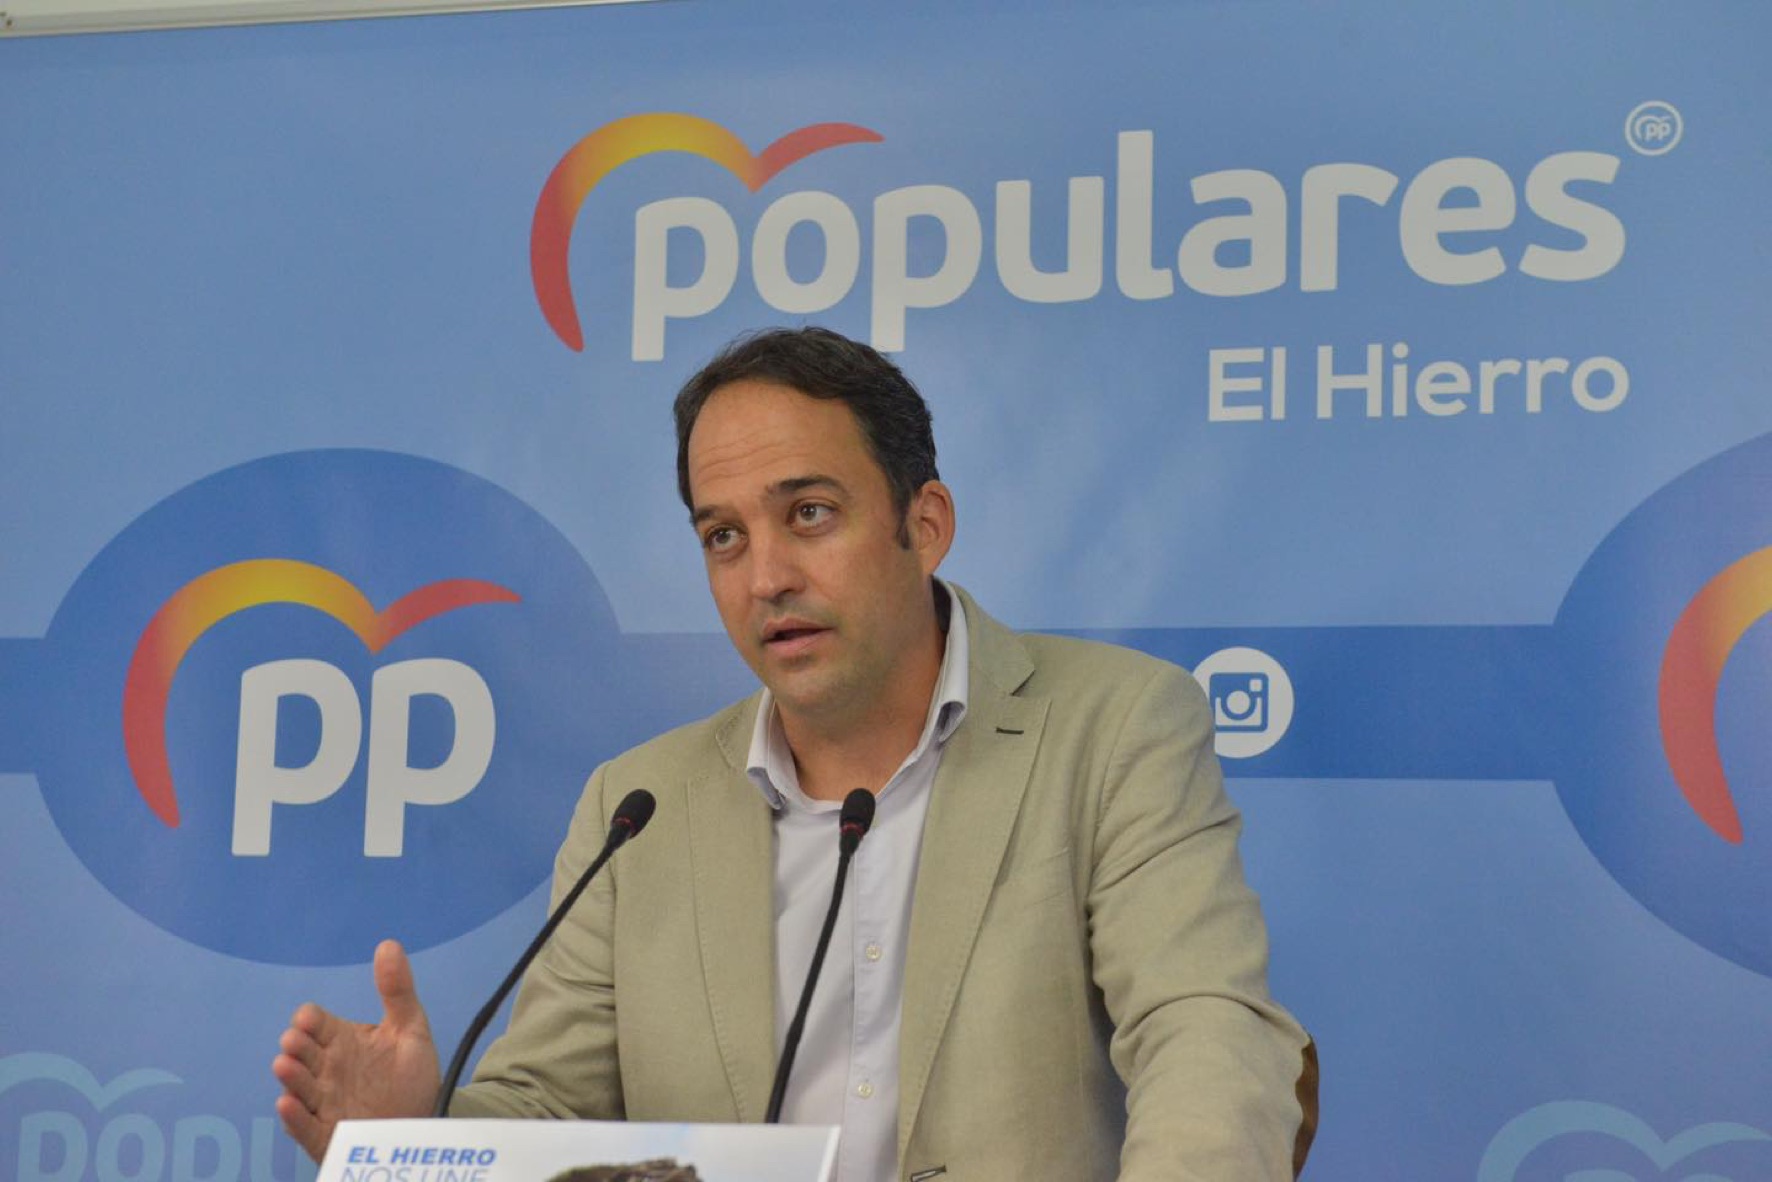  Juan Manuel García Casañas, con un apoyo del 99,8 por ciento de los votos, seguirá al frente del Partido Popular en El Hierro durante los próximos cuatro años